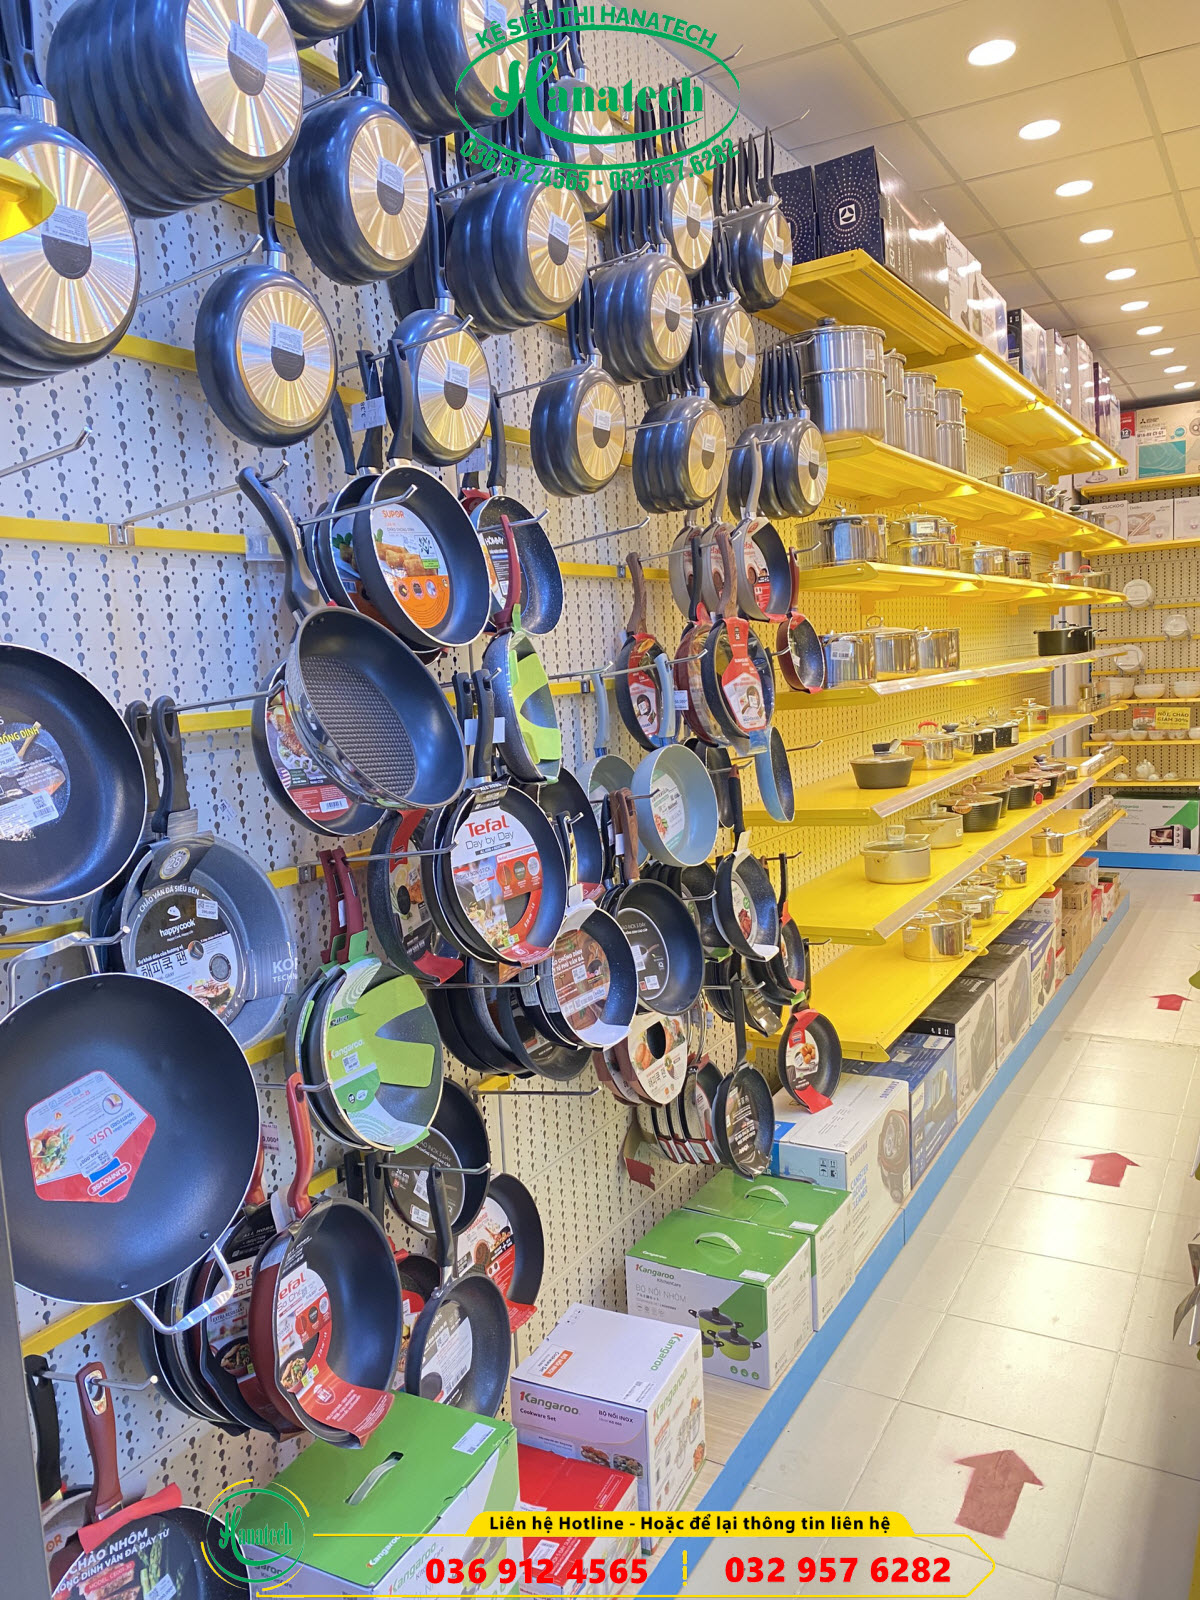 Giá kệ siêu thị trưng bày cho cửa hàng điện máy đồ gia dụng tại Tây Ninh